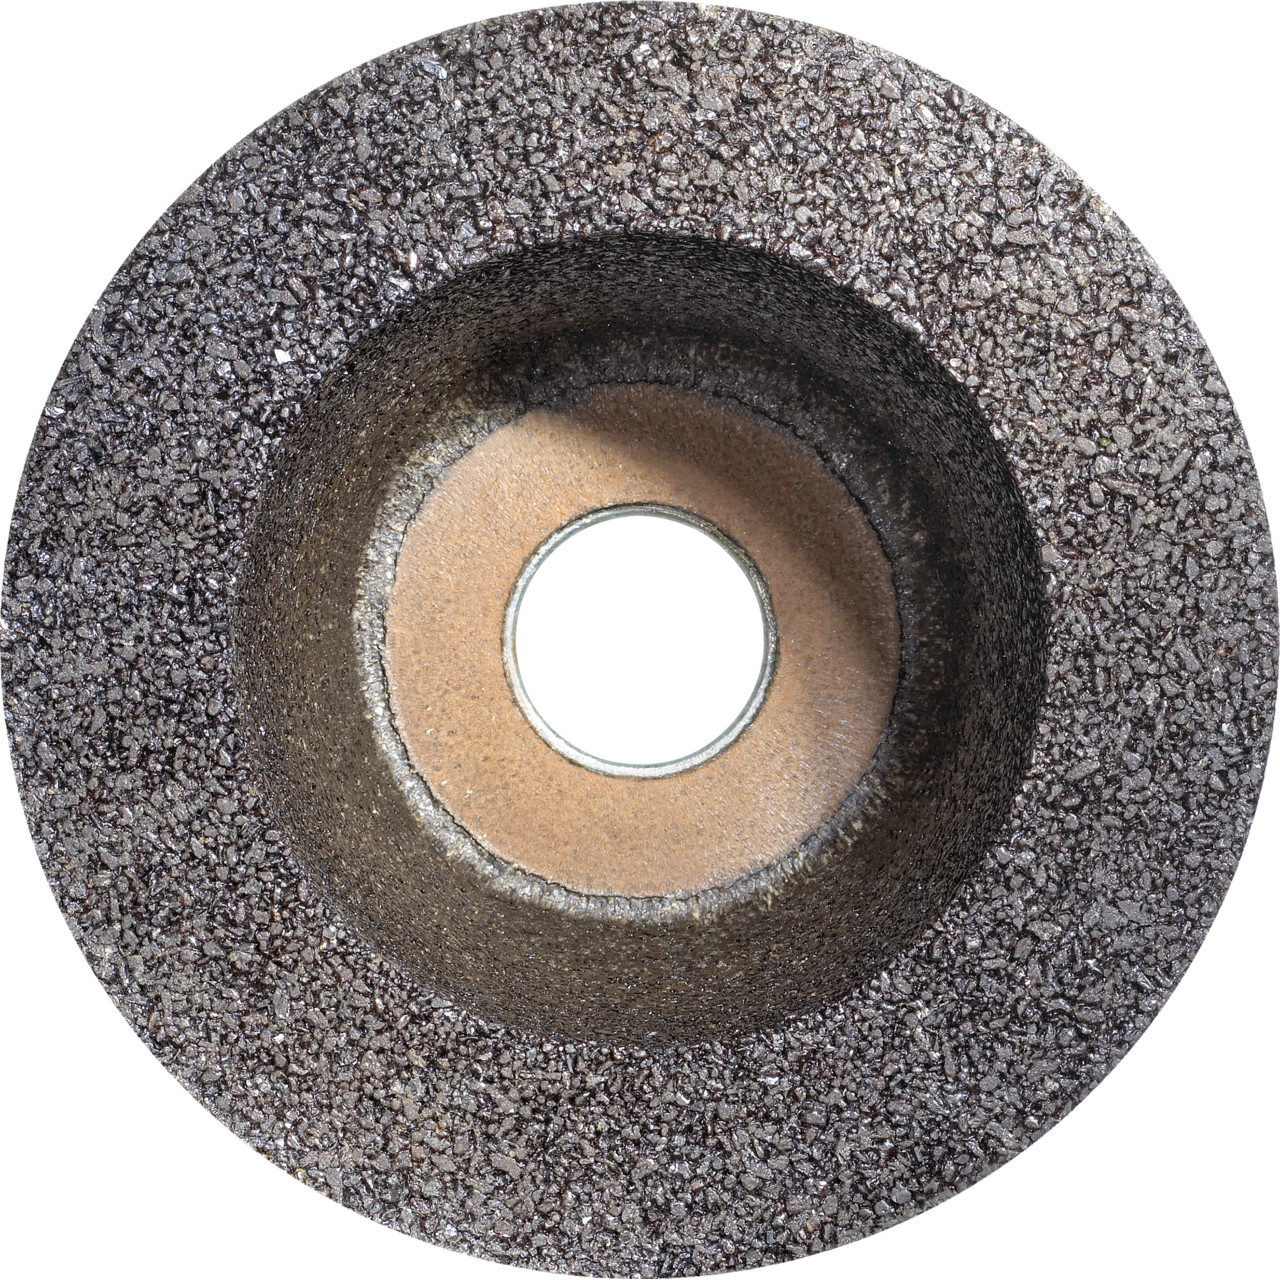 Tyrolit Copa de resina sintética D/JxDxH 110/90x55x22,2 Para acero, forma: 11BT (rueda de copa), Art. 895669